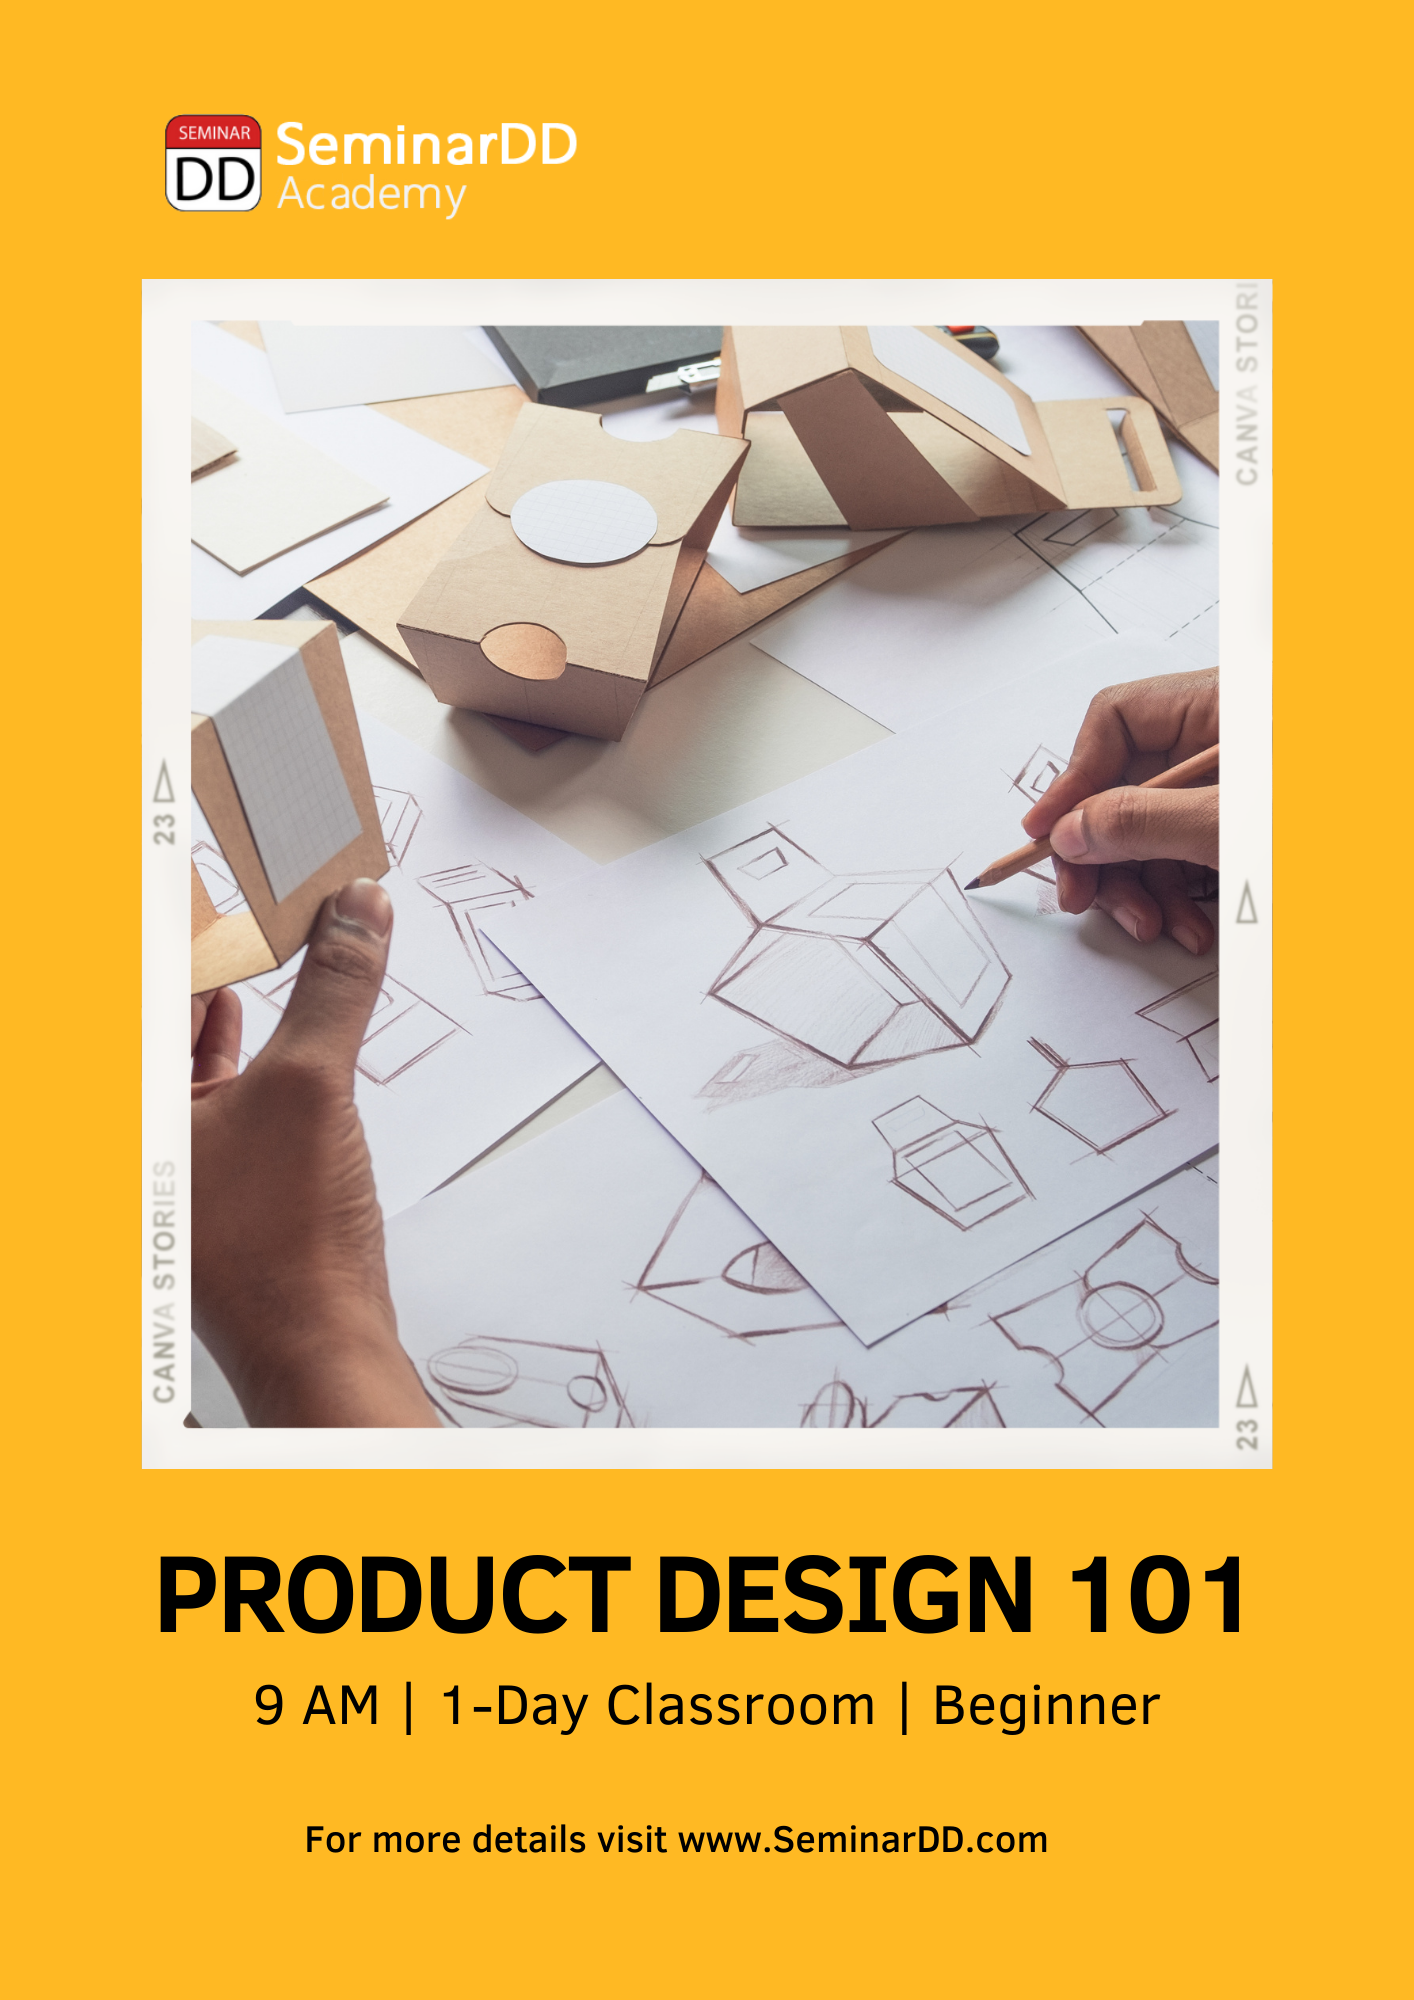 หลักสูตร การออกแบบผลิตภัณฑ์เบื้องต้น (Introduction to Product Design 101)